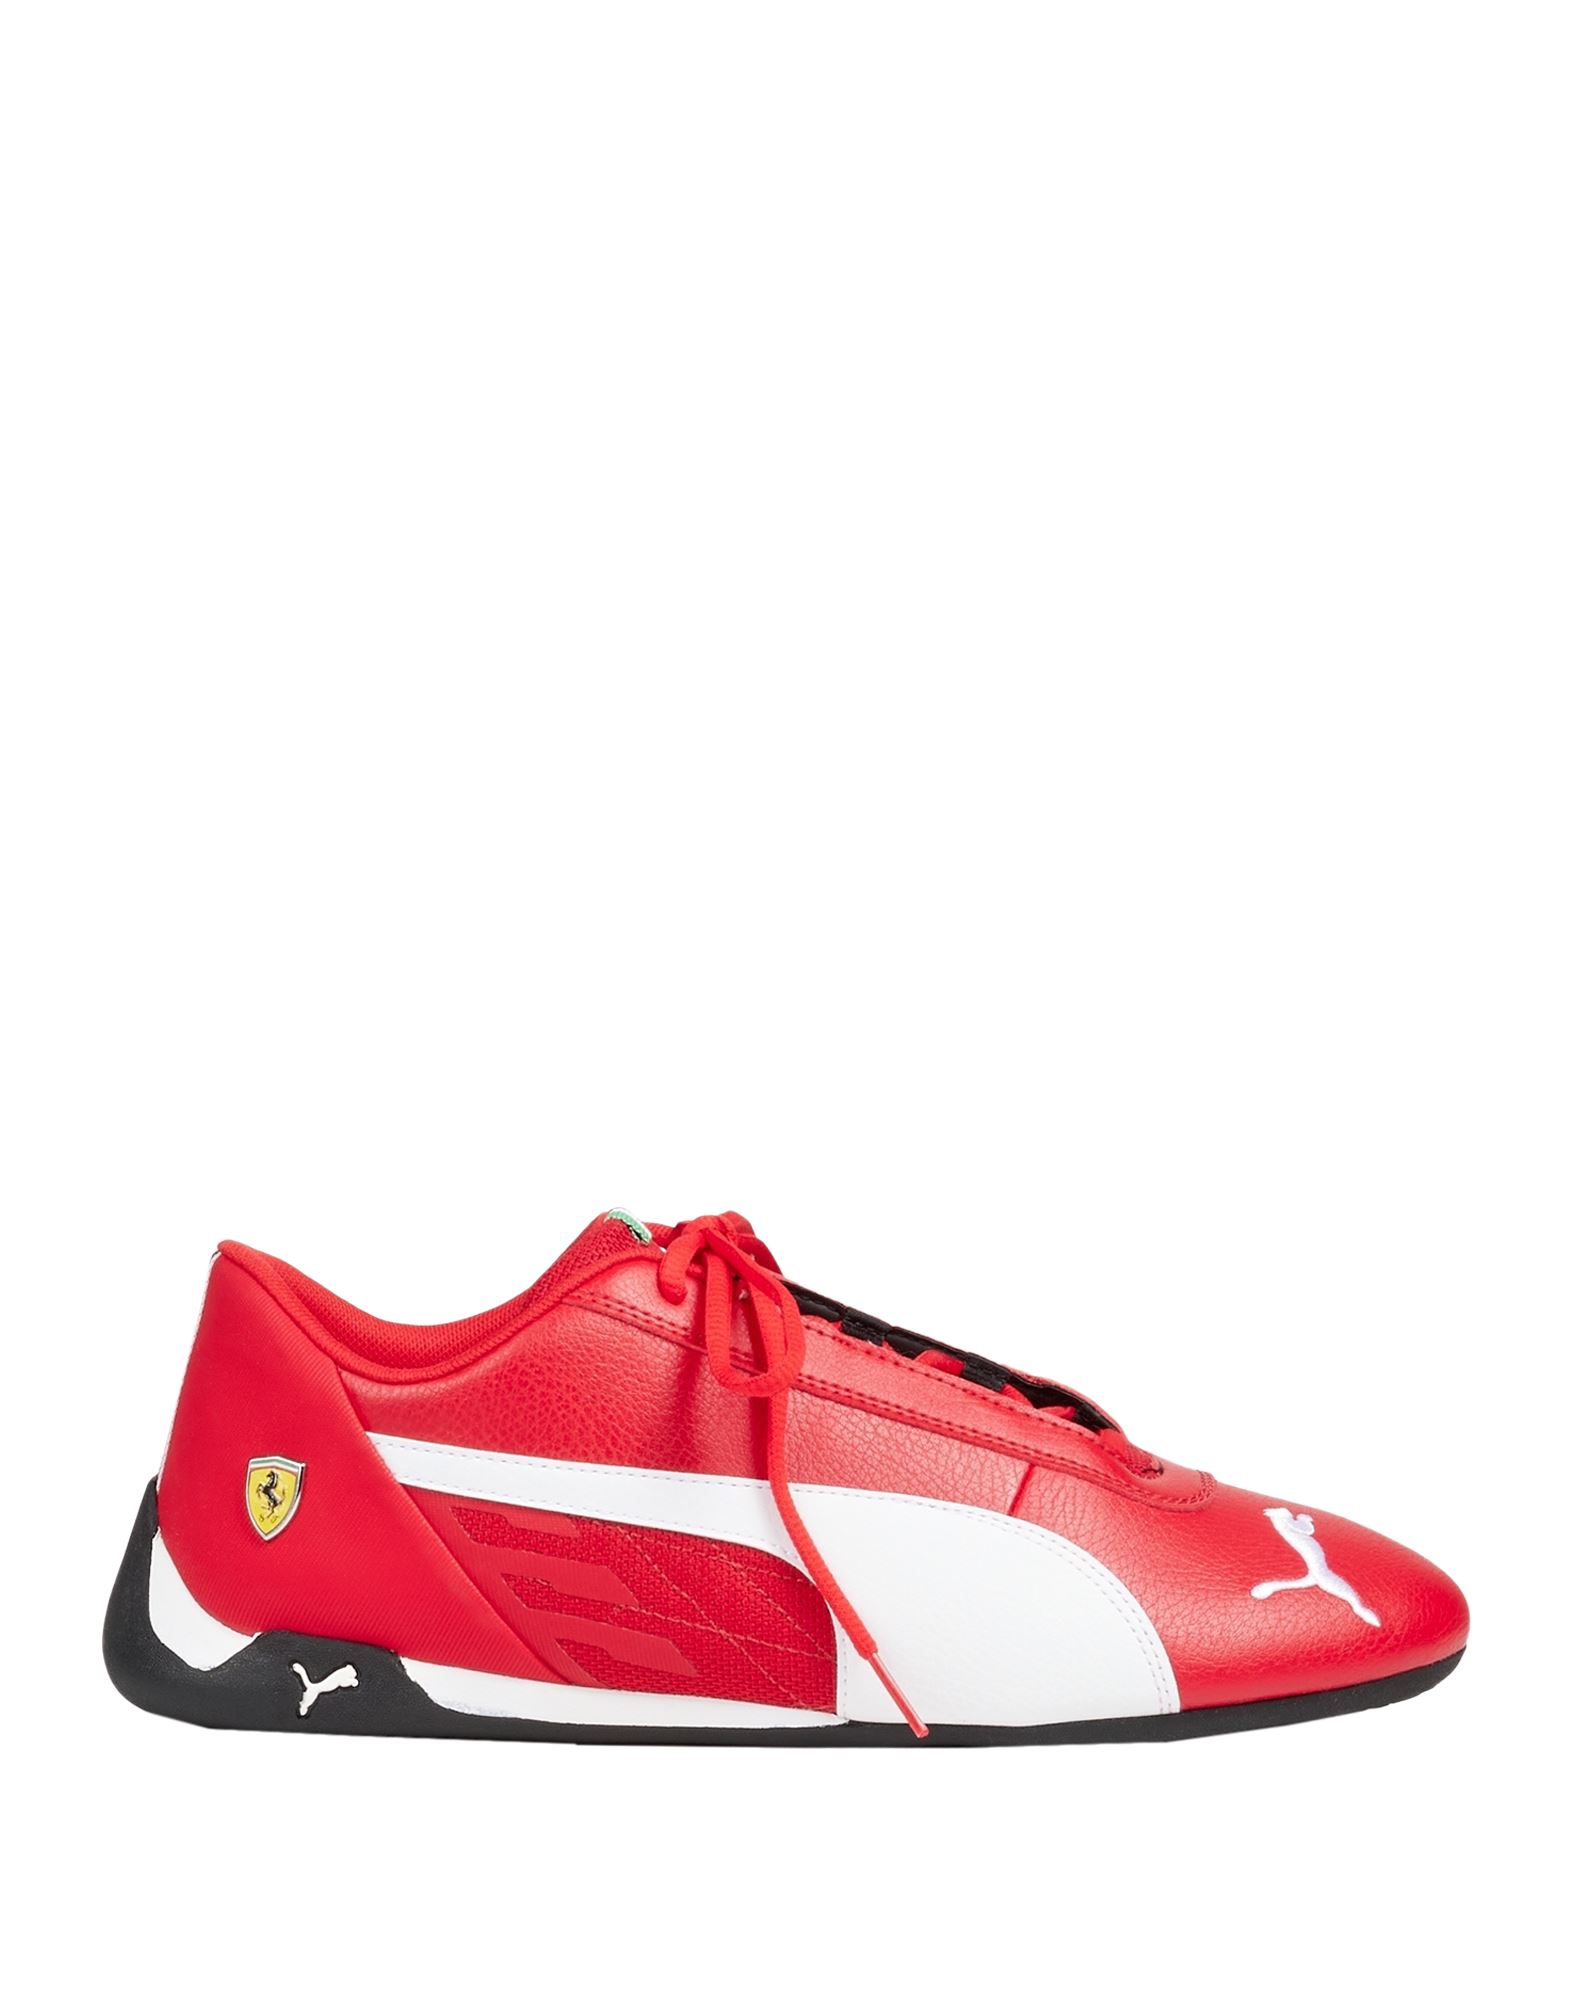 Puma X Ferrari Sneakers In Red